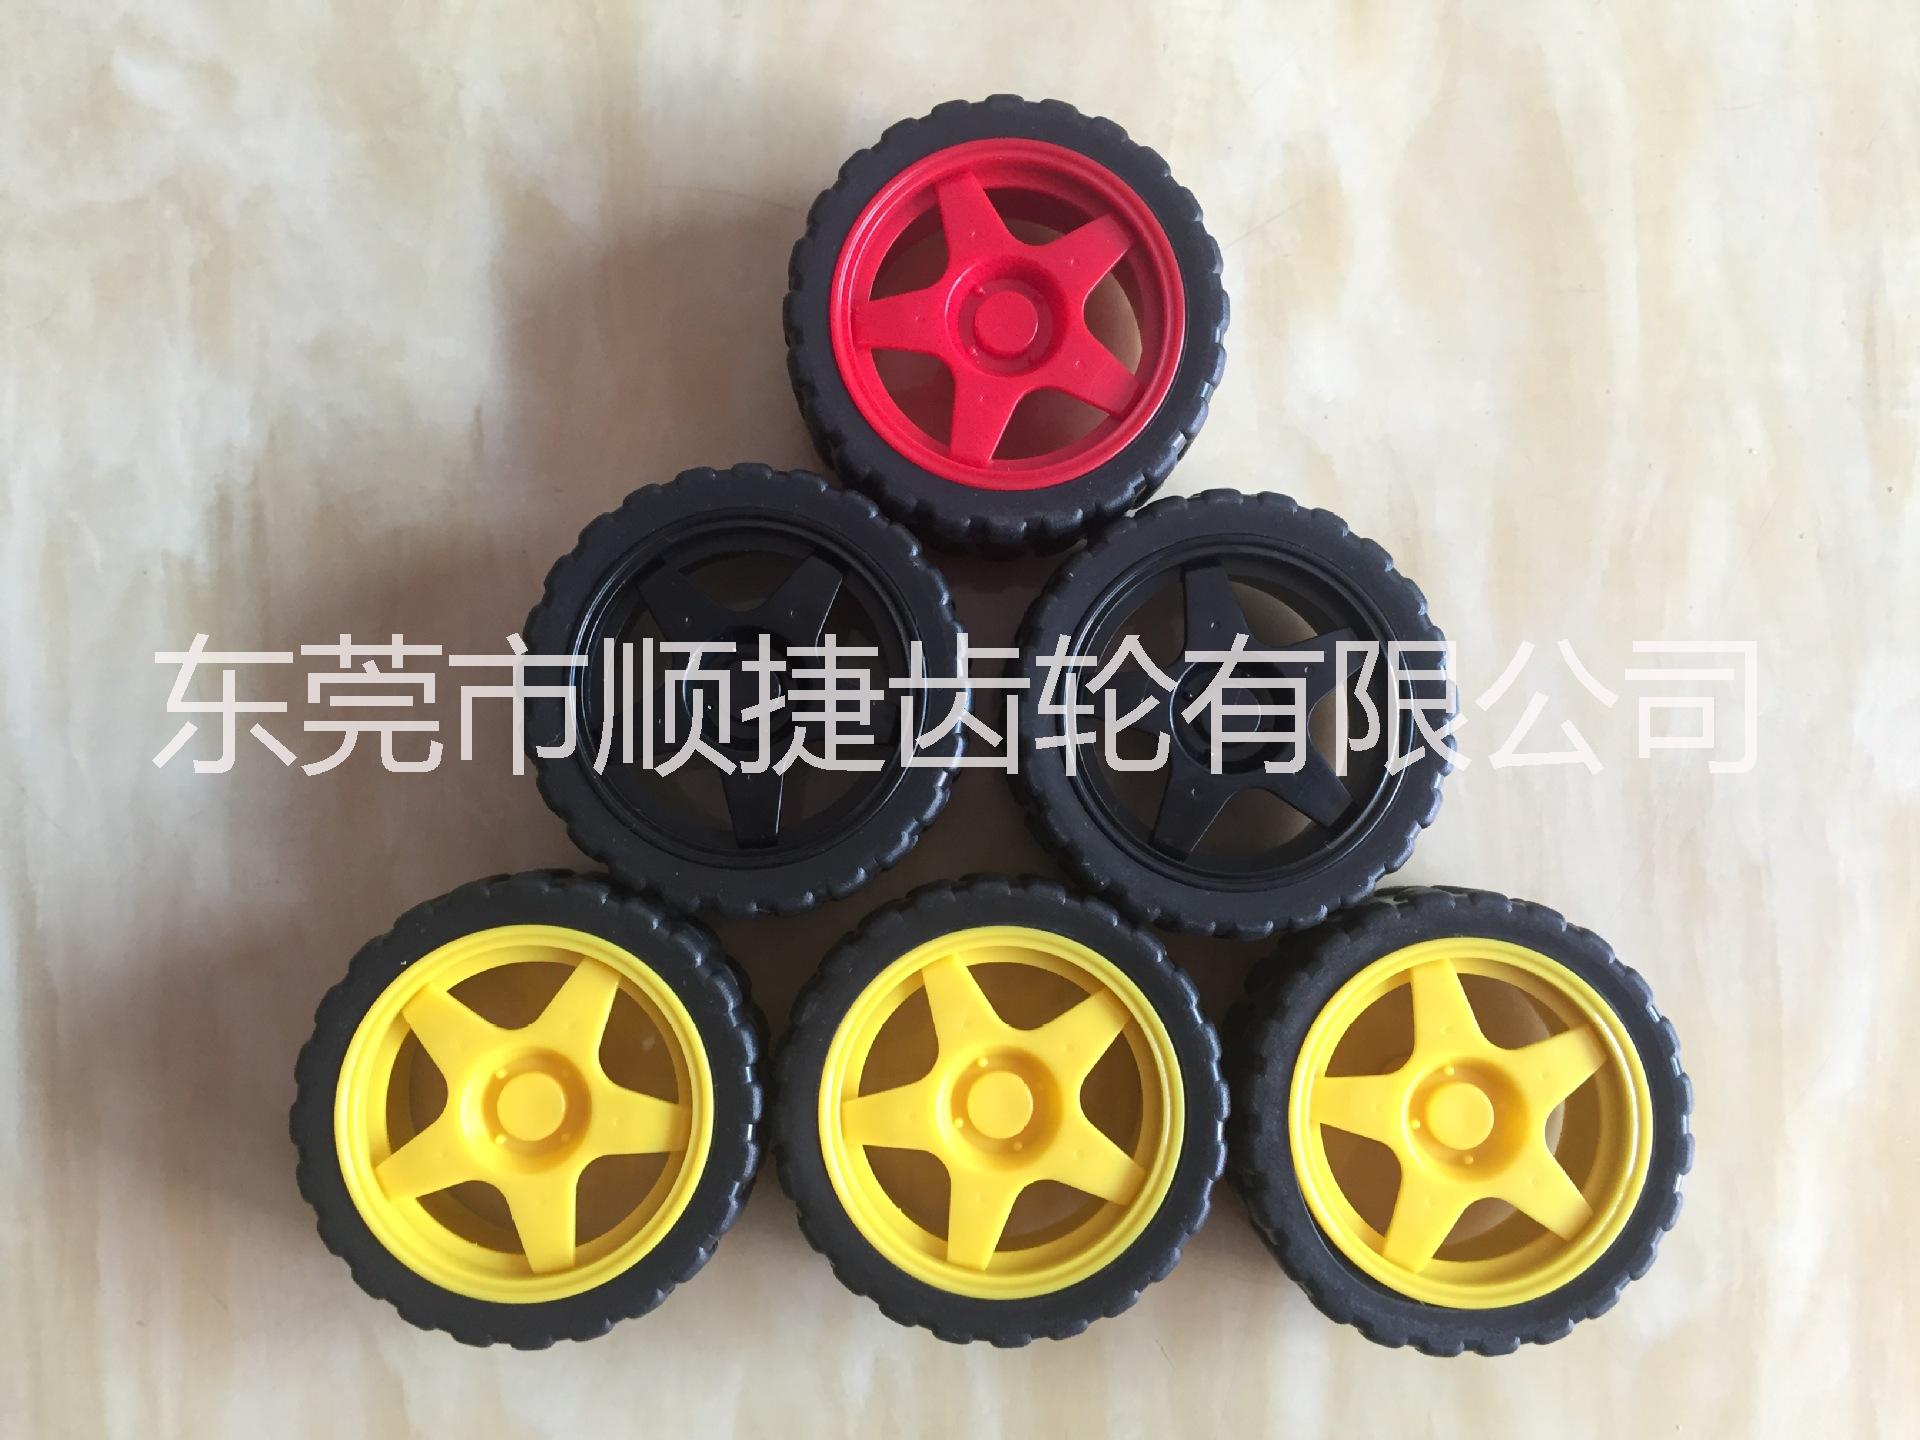 轮胎玩具轮胎 橡胶环保轮胎 DIY轮胎 智能轮胎 机器人轮胎